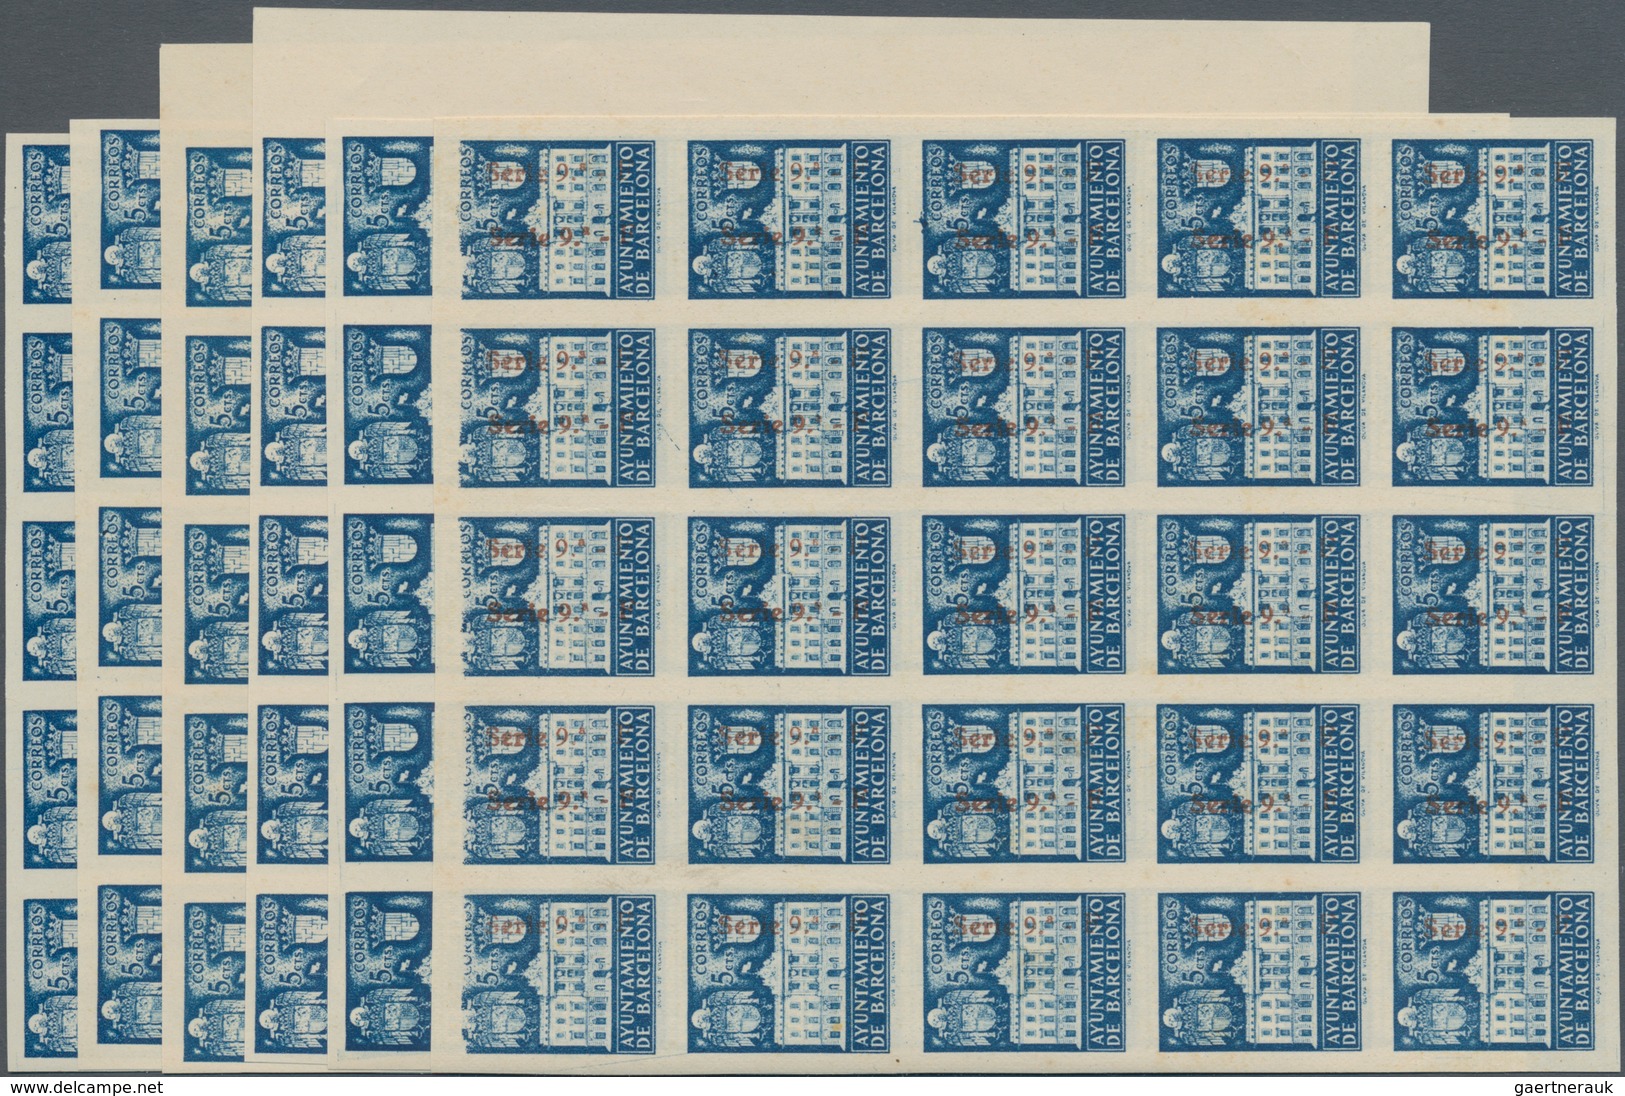 Spanien - Zwangszuschlagsmarken Für Barcelona: 1942, Town Hall Of Barcelona 5c. Blue In Five IMPERFO - Kriegssteuermarken